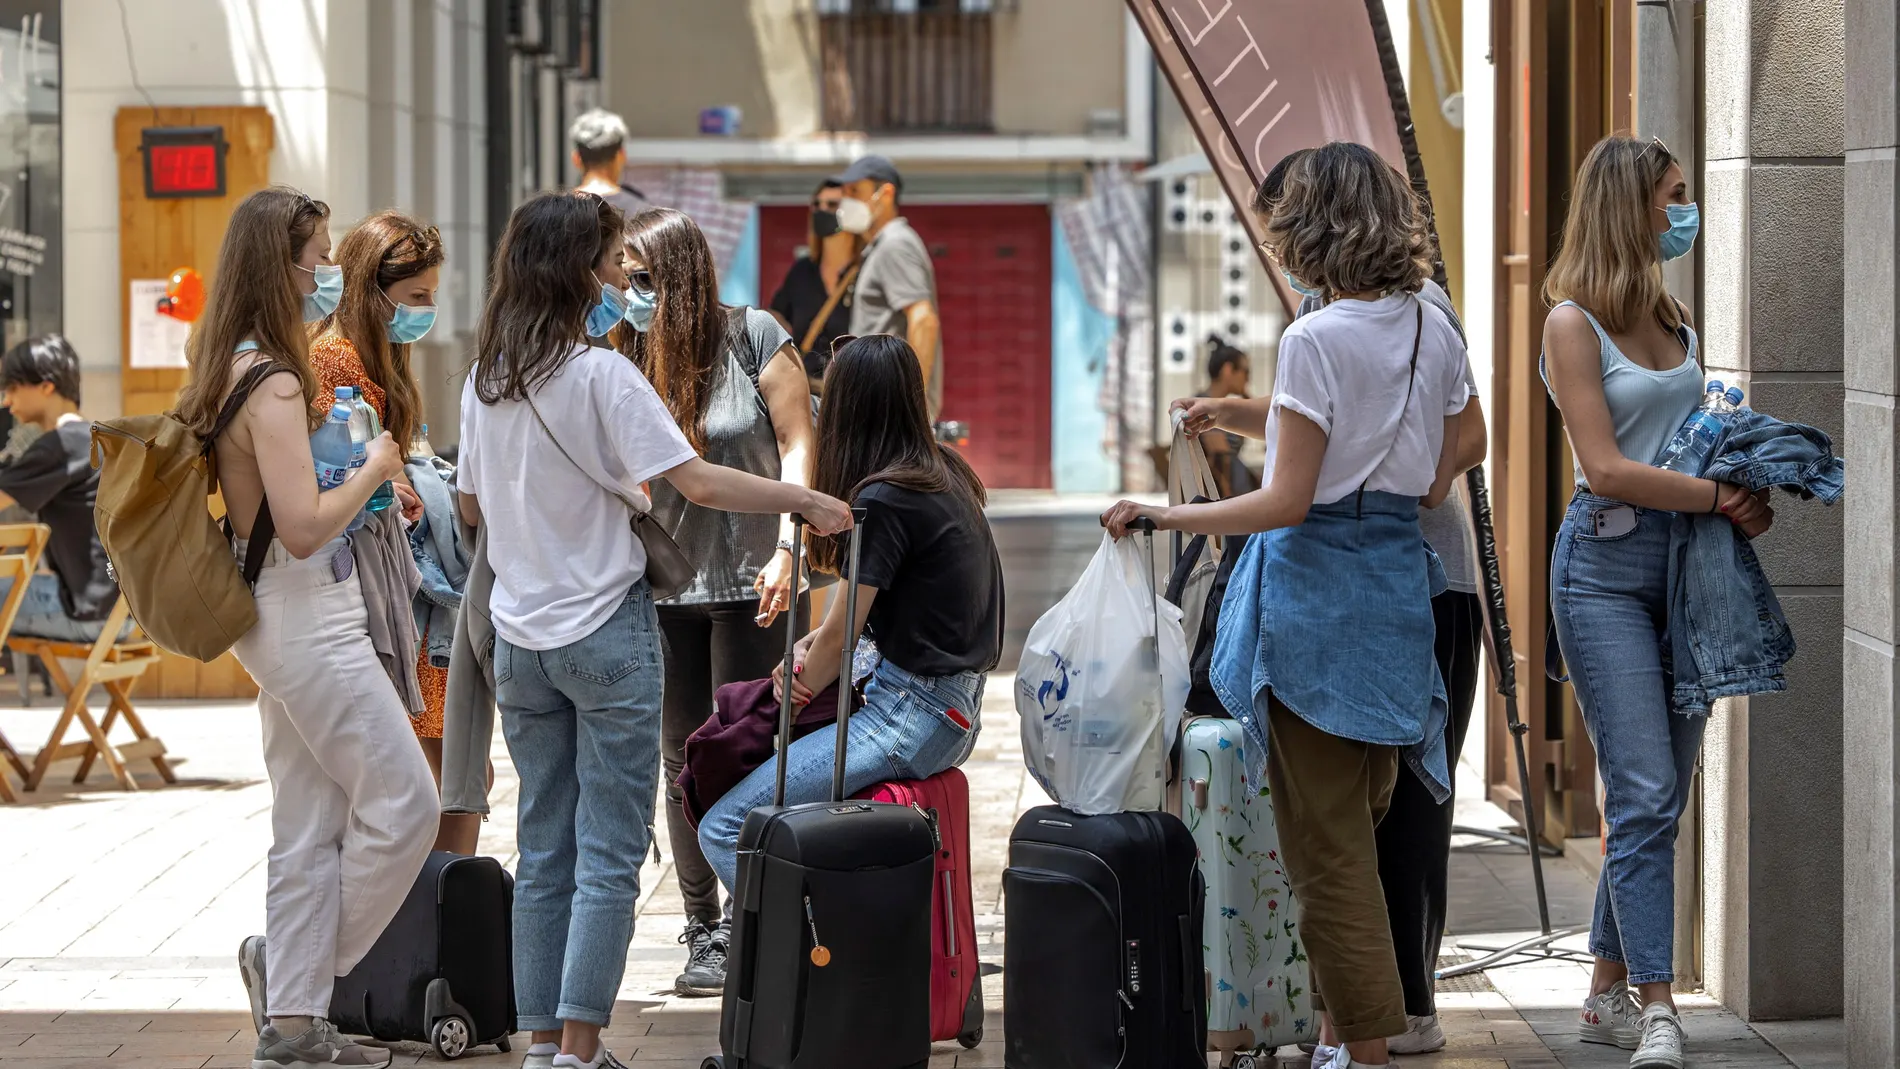 Varias turistas esperan junto a sus maletas frente al portal de un edificio del centro histórico de Valencia